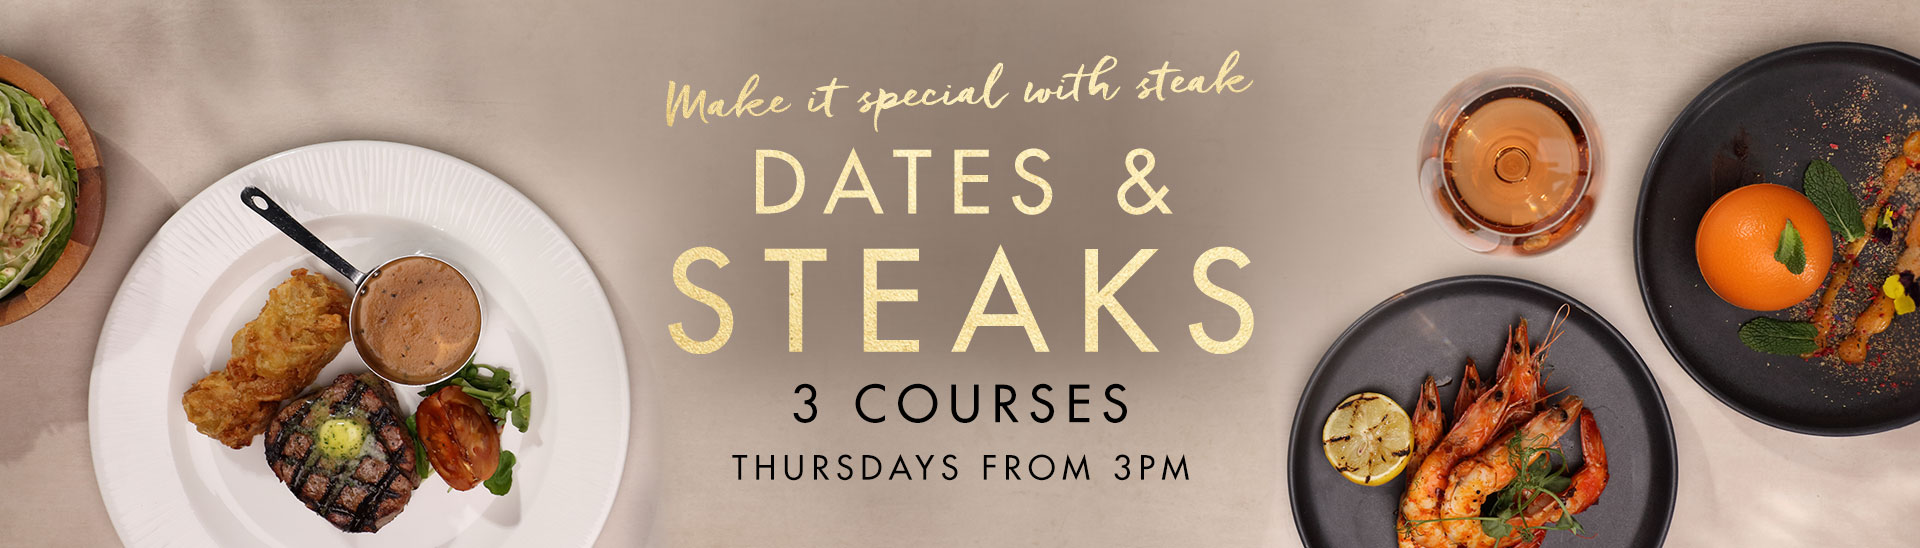 Dates & Steaks at Miller & Carter Sheffield Centertainment